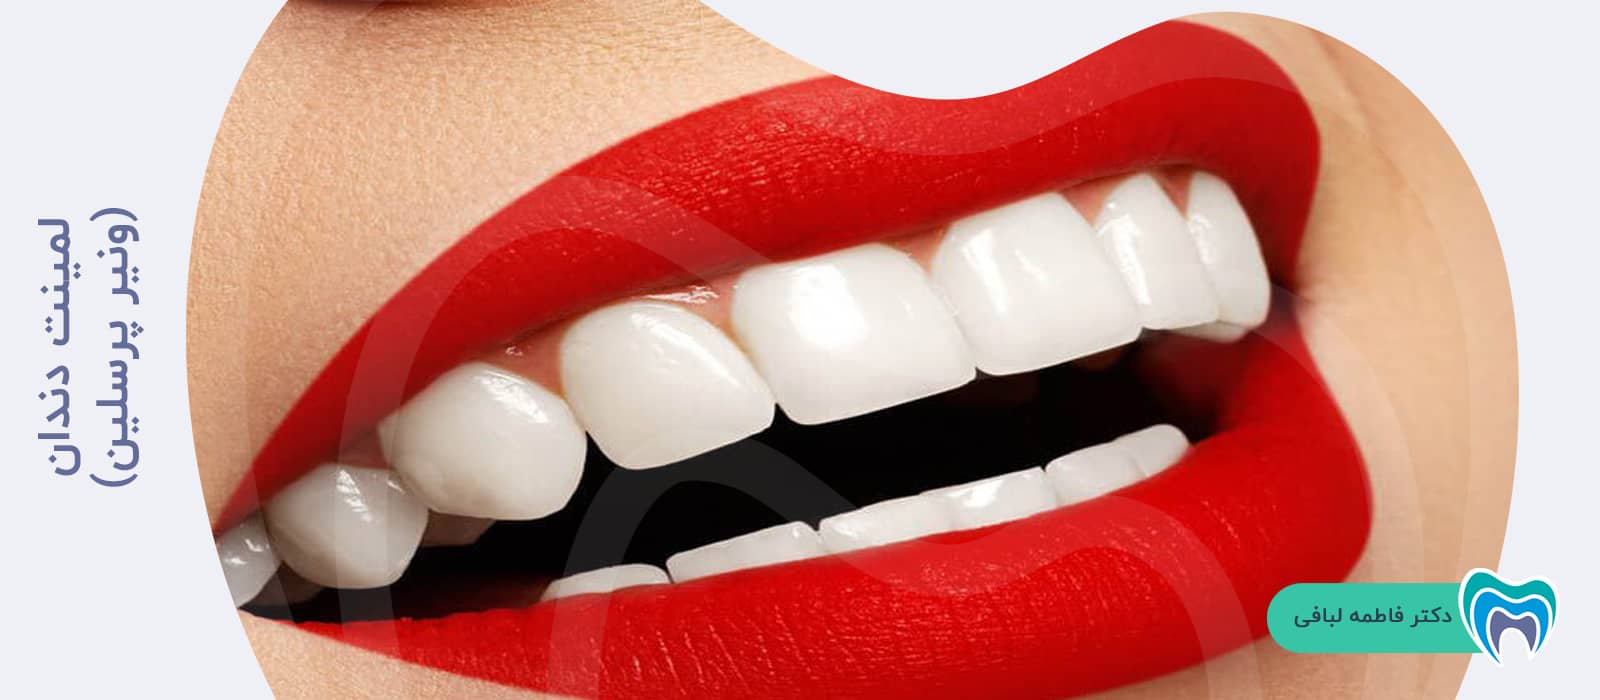 لمینت دندان برای سفید کردن دندان افراد سیگاری چه تاثیری دارد؟